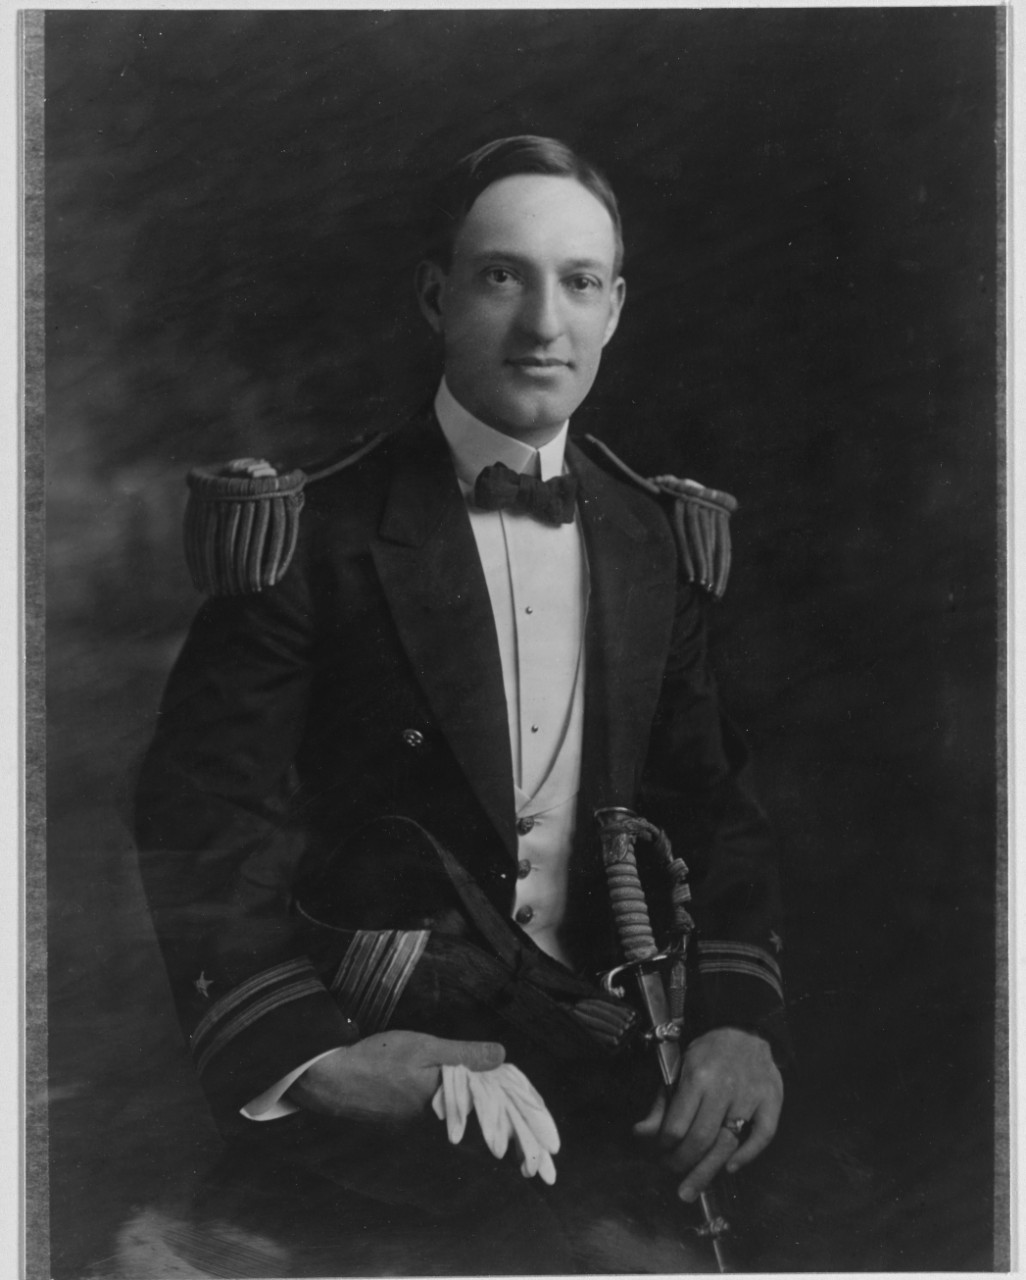 Lieutenant Henry G. Fuller, USN